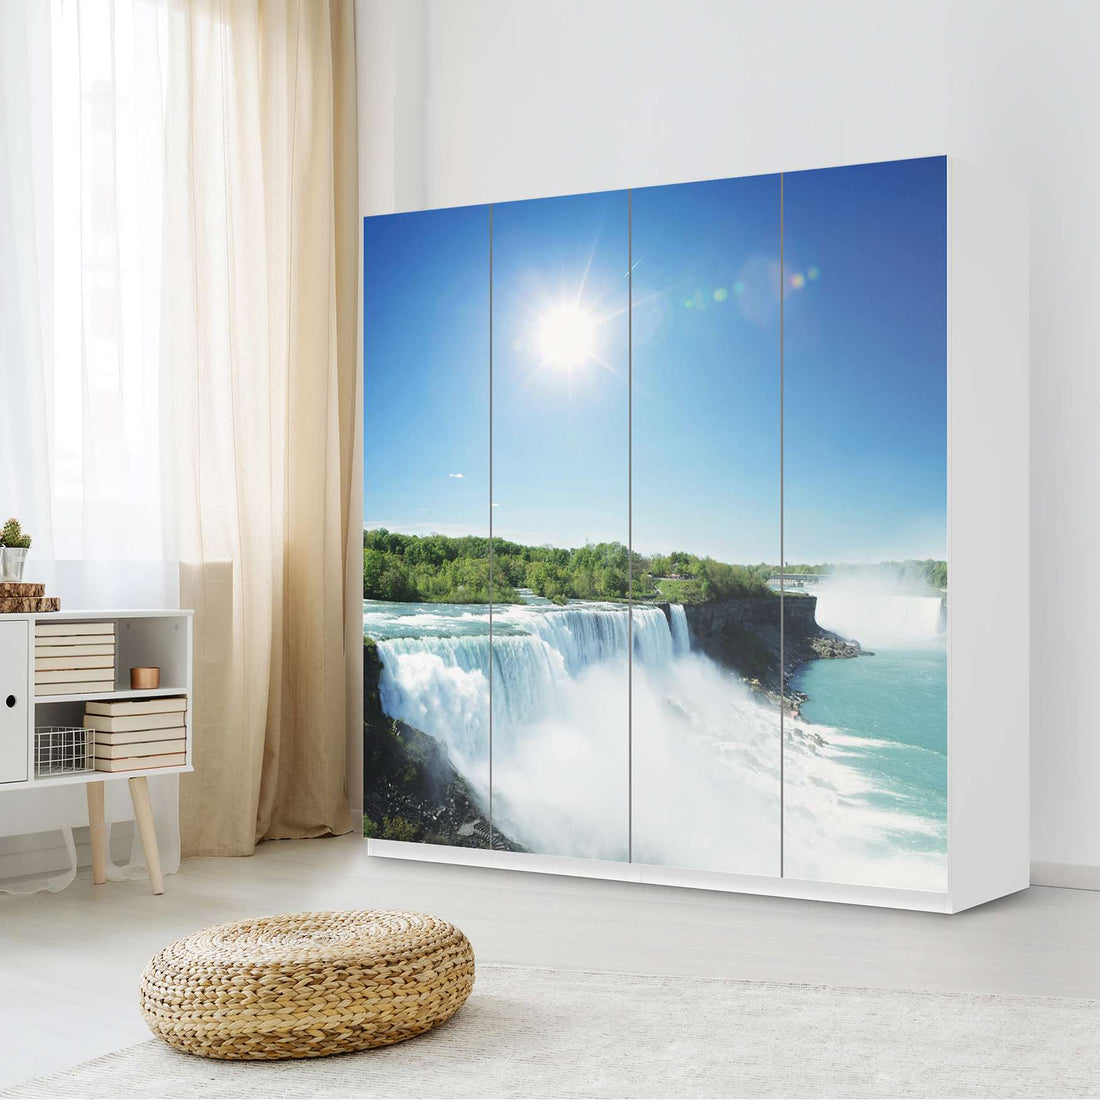 Klebefolie für Schränke Niagara Falls - IKEA Pax Schrank 201 cm Höhe - 4 Türen - Schlafzimmer